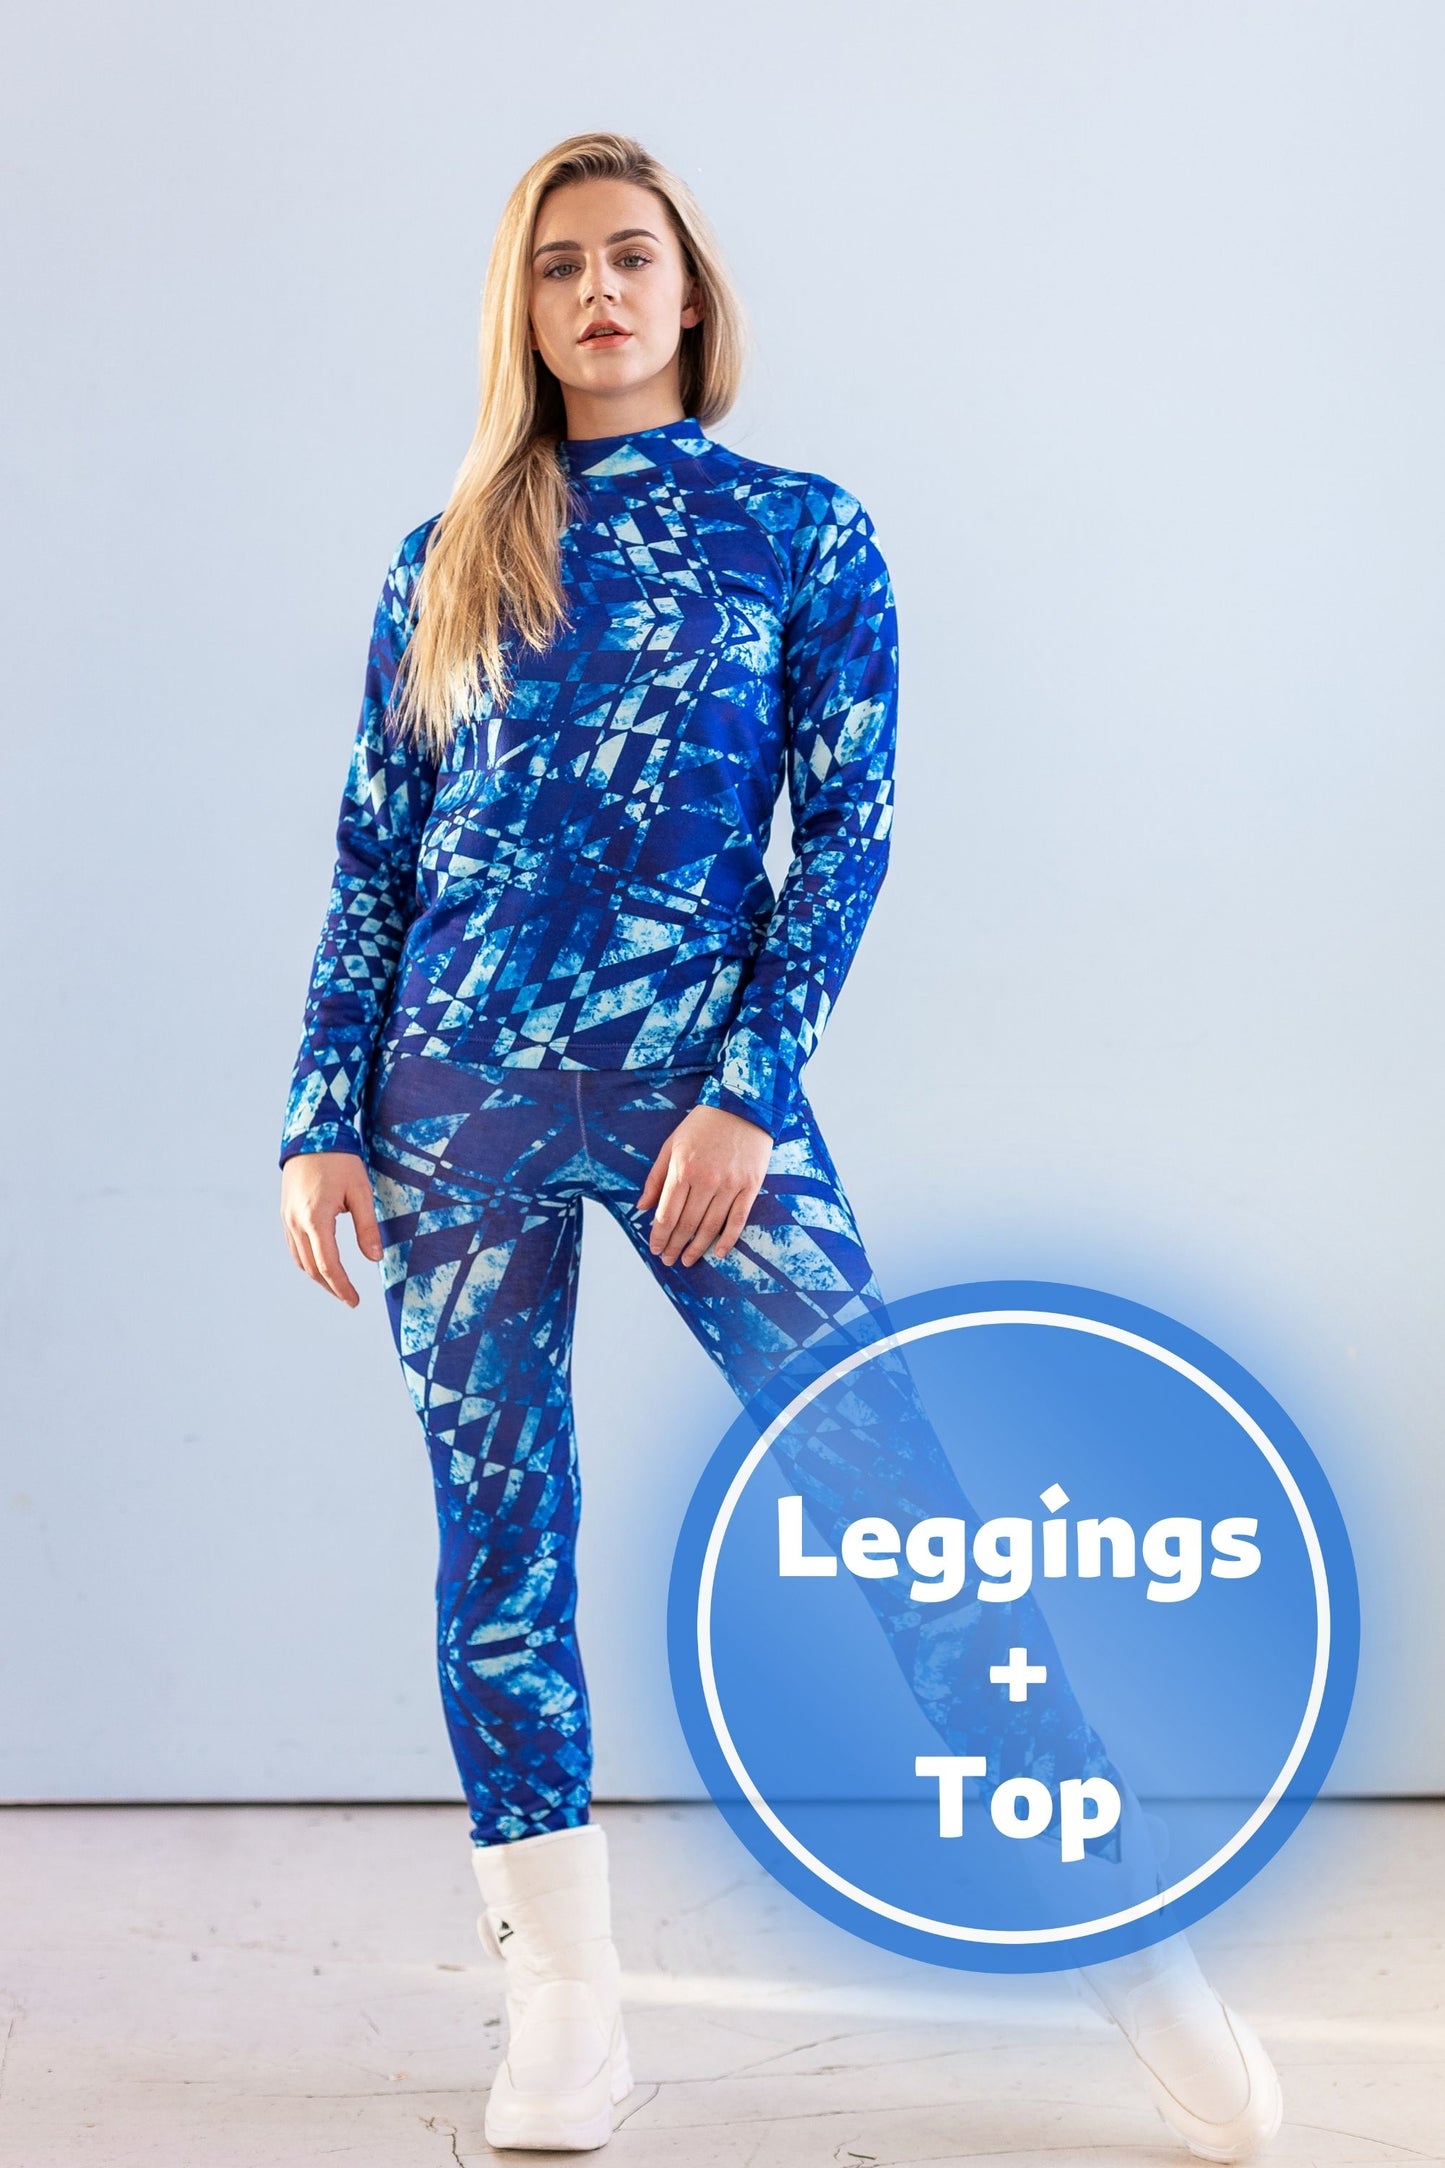 SET: Damen-Thermobekleidung, Leggings, abstraktes blaues Top, Winterunterwäsche, Thermoschutz, Kleidung, Sportunterwäsche, Winterkleidung